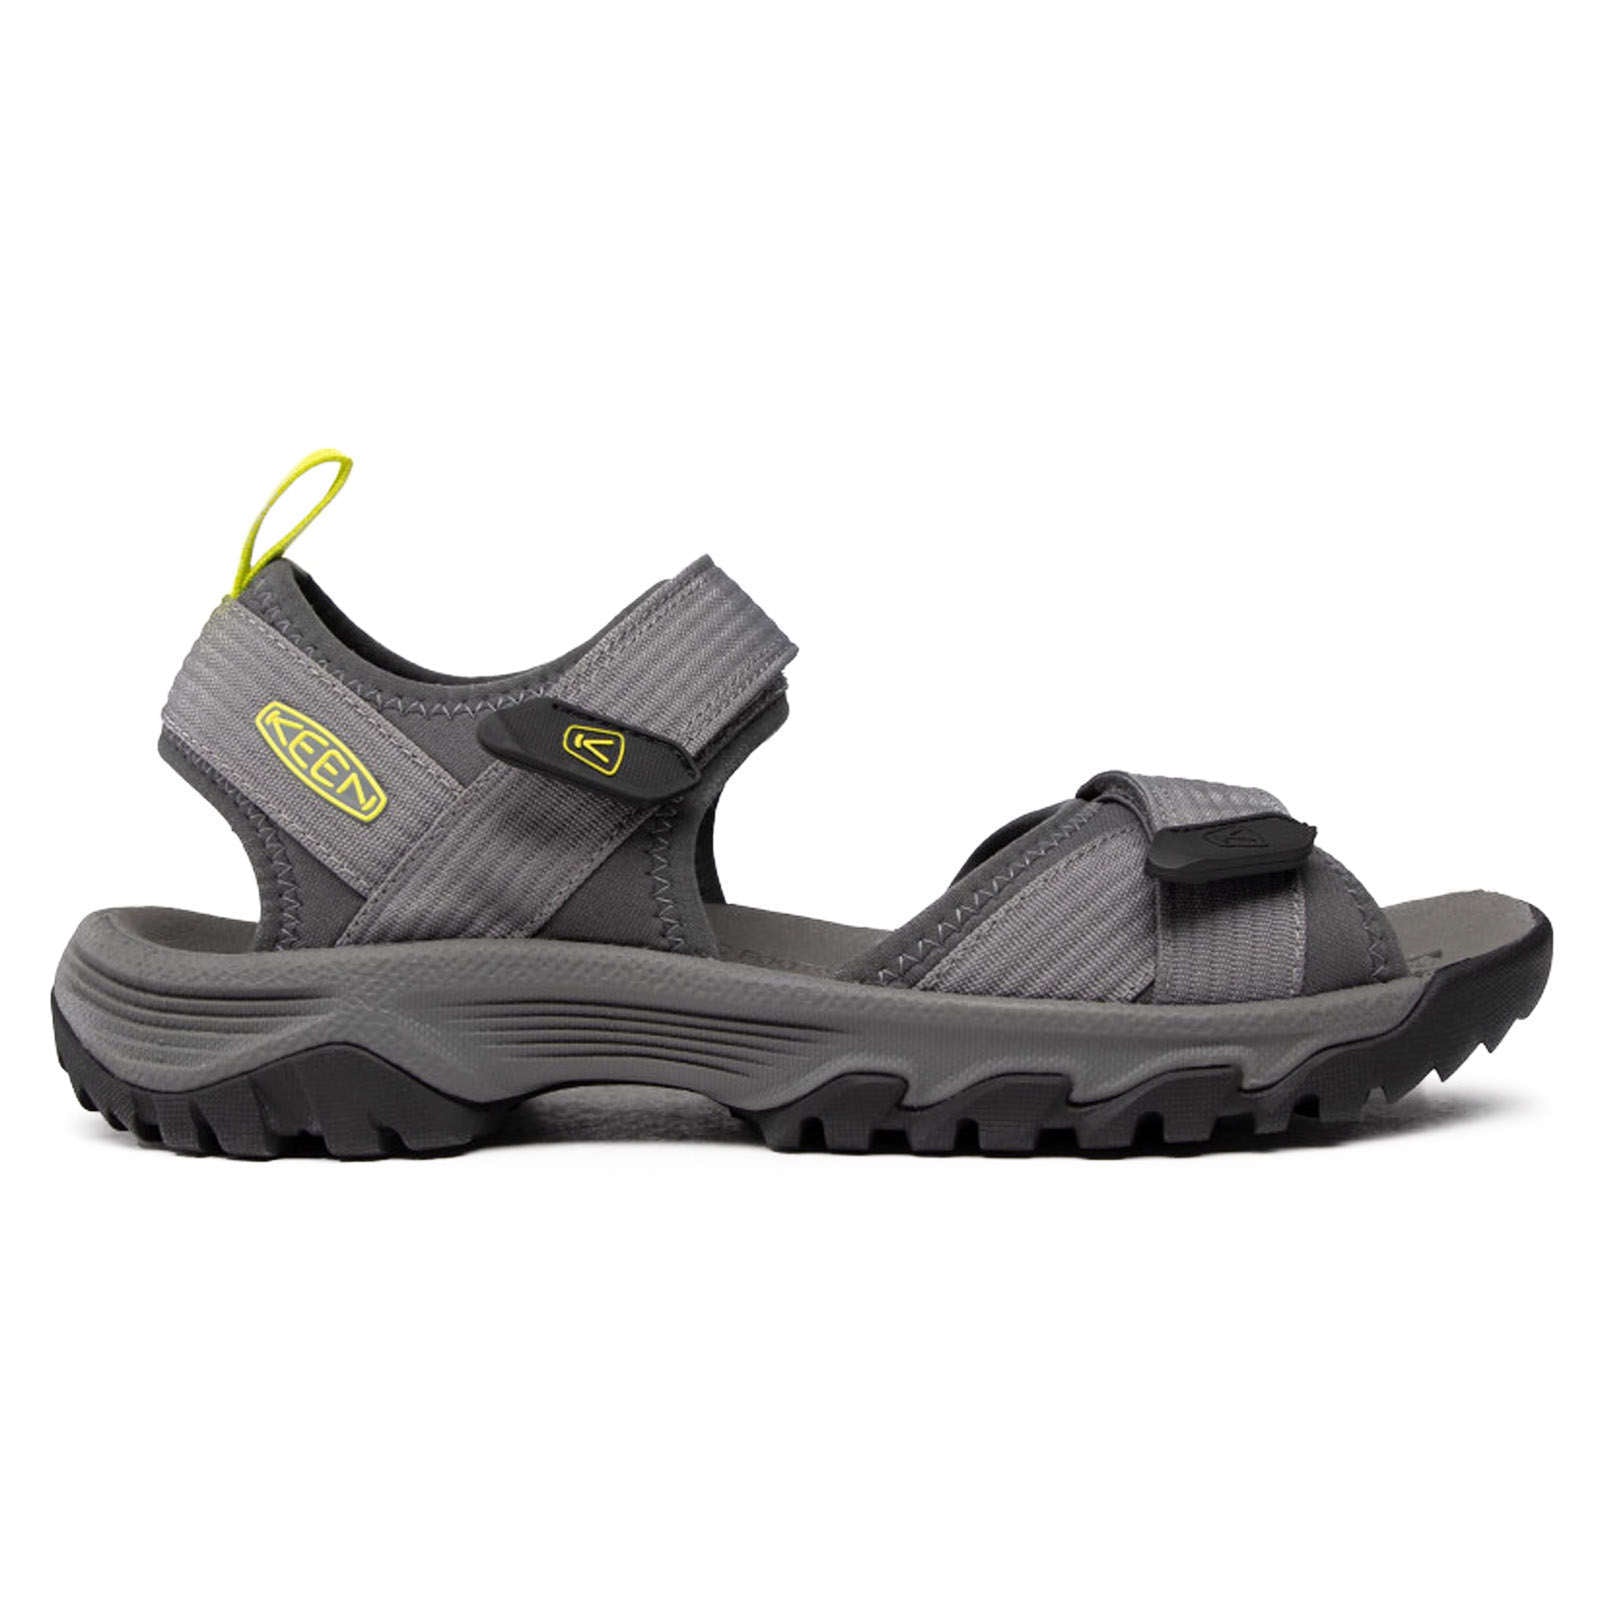 Keen Targhee III Synthetic Textile Men's Hiking Sandals#color_steel grey evening primrose